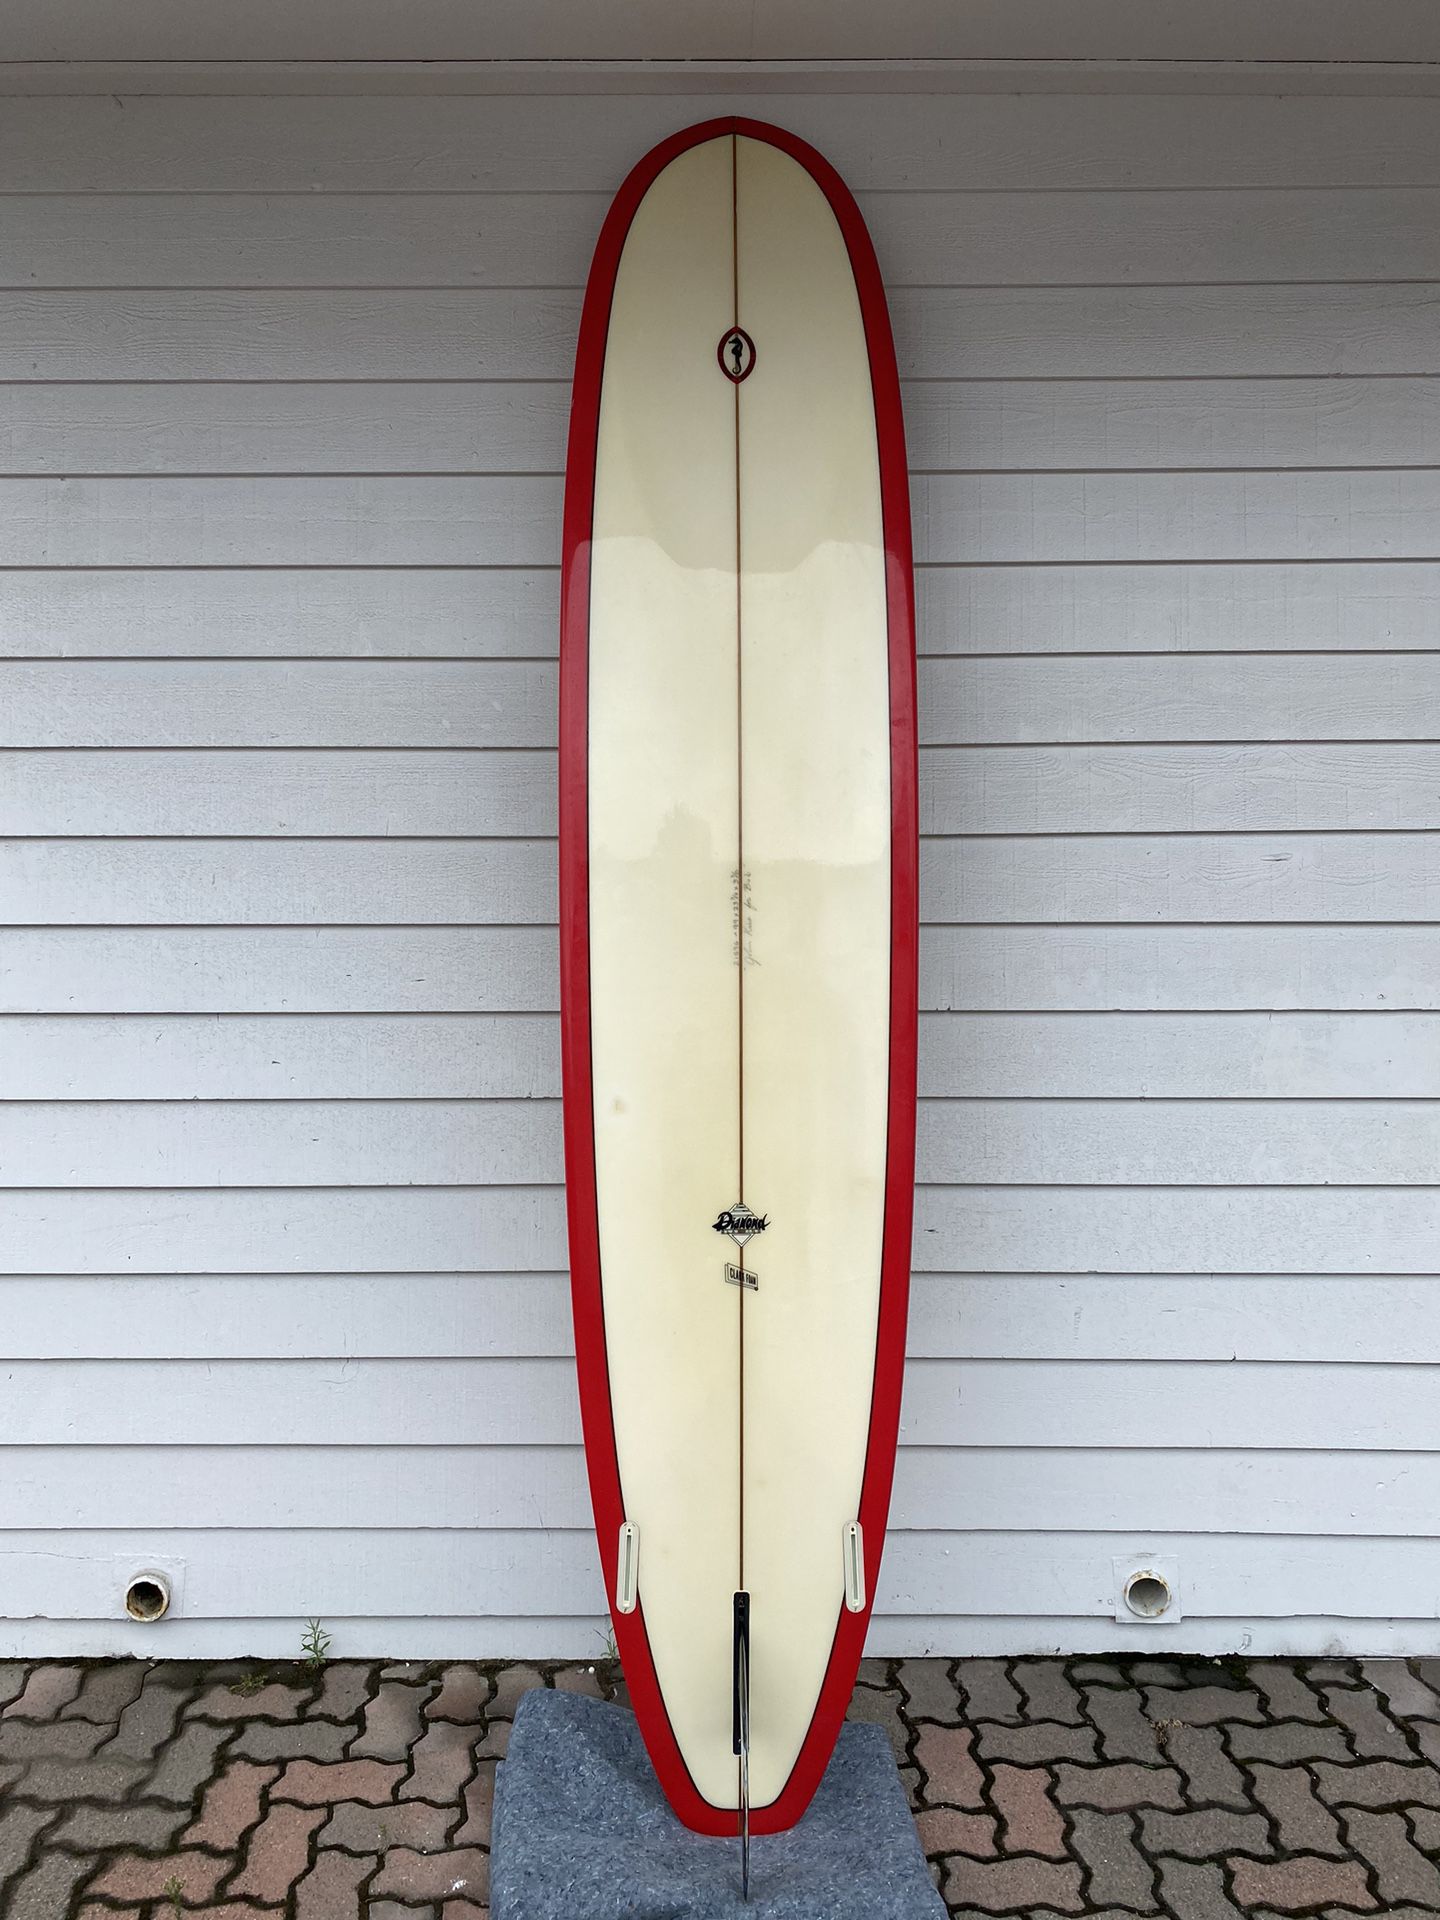 Classic Encinitas Surfboards John Kies Noserider Longboard w/ Fin, 9’9” Clark Foam